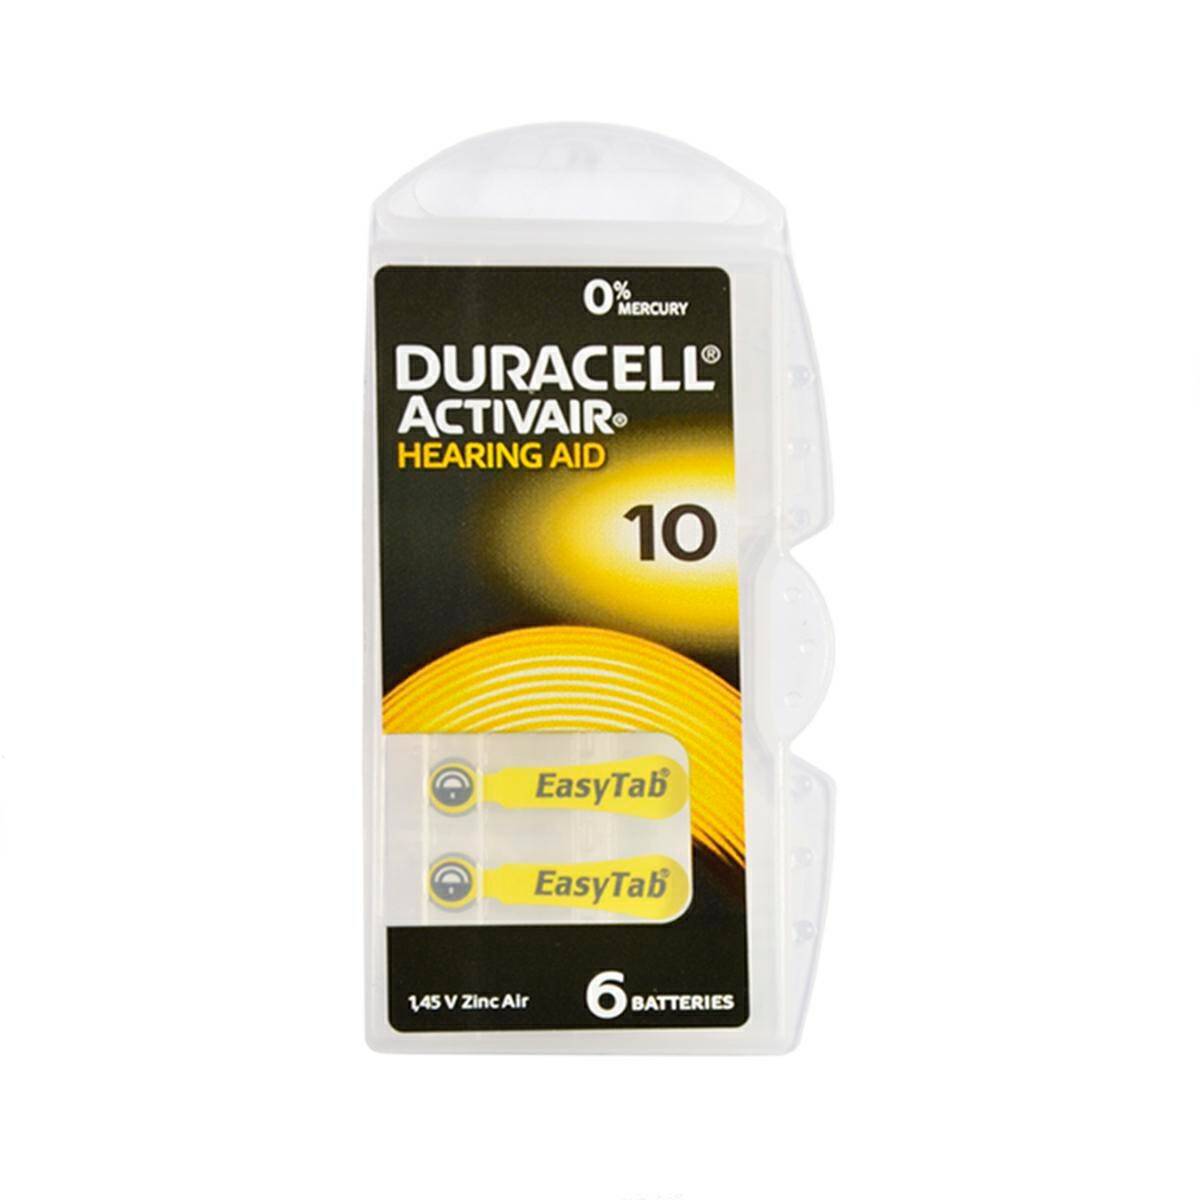 Bateria Duracell Hearing AID 10 1,45V